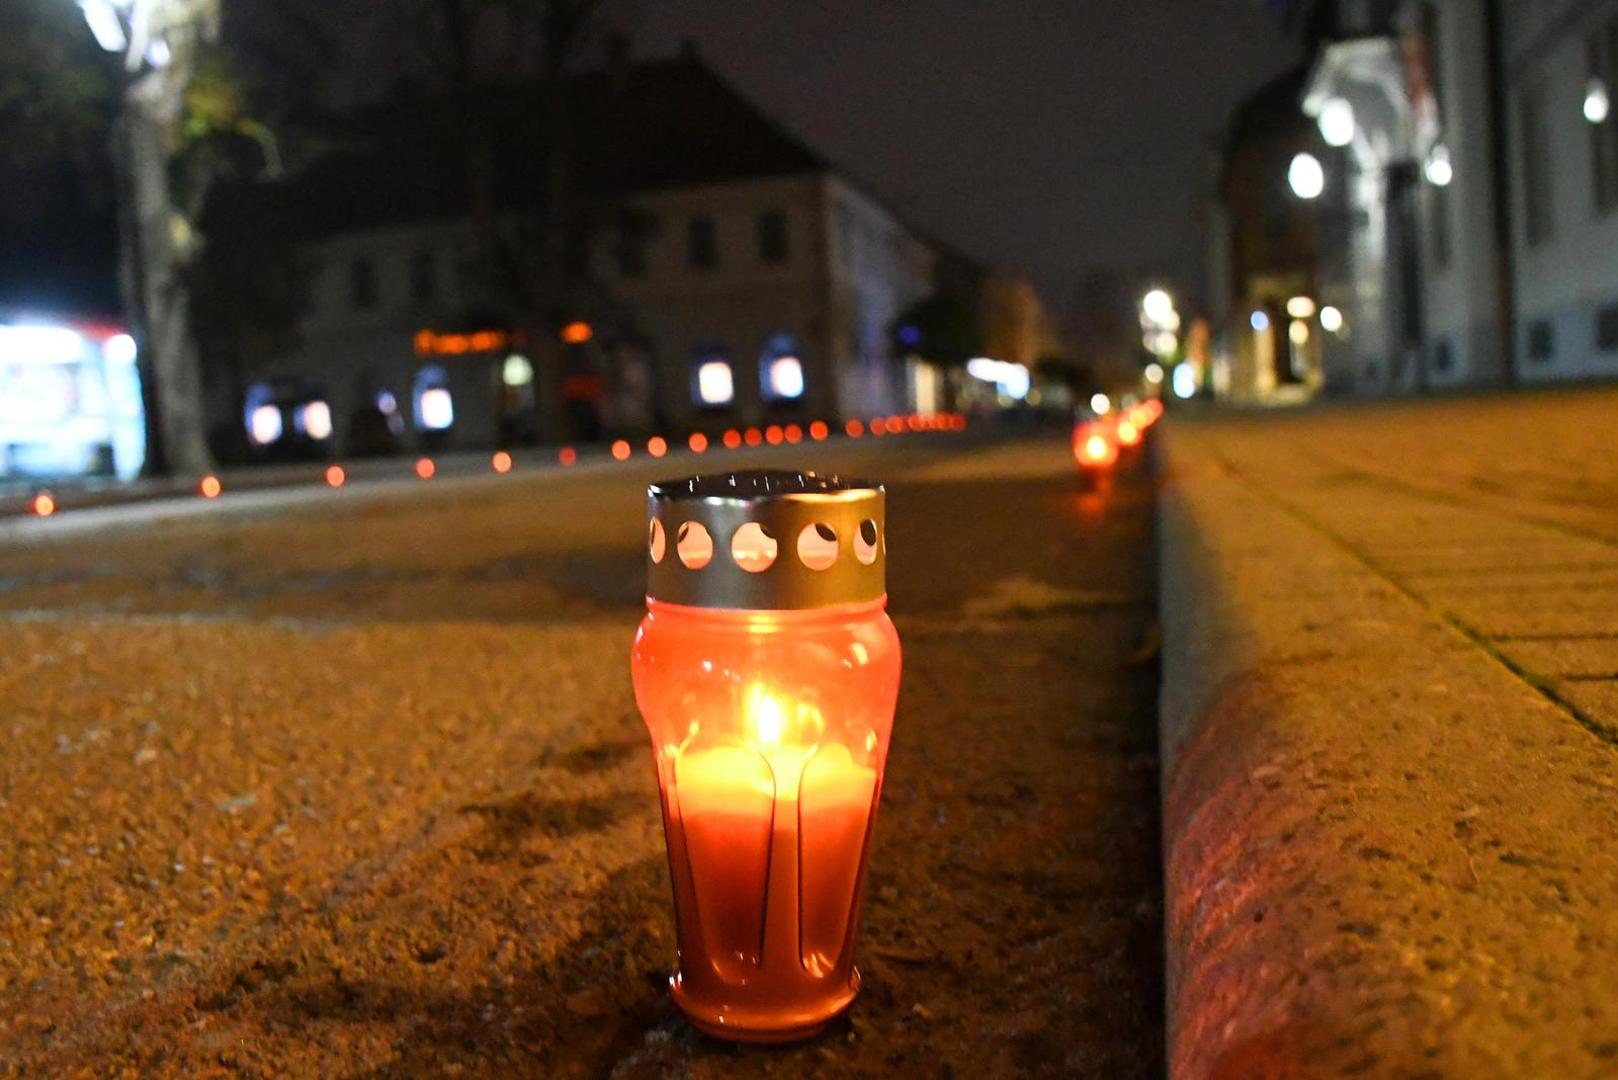 I građani Bjelovara zapalili su lampione u čast Vukovara i Škabrnje.